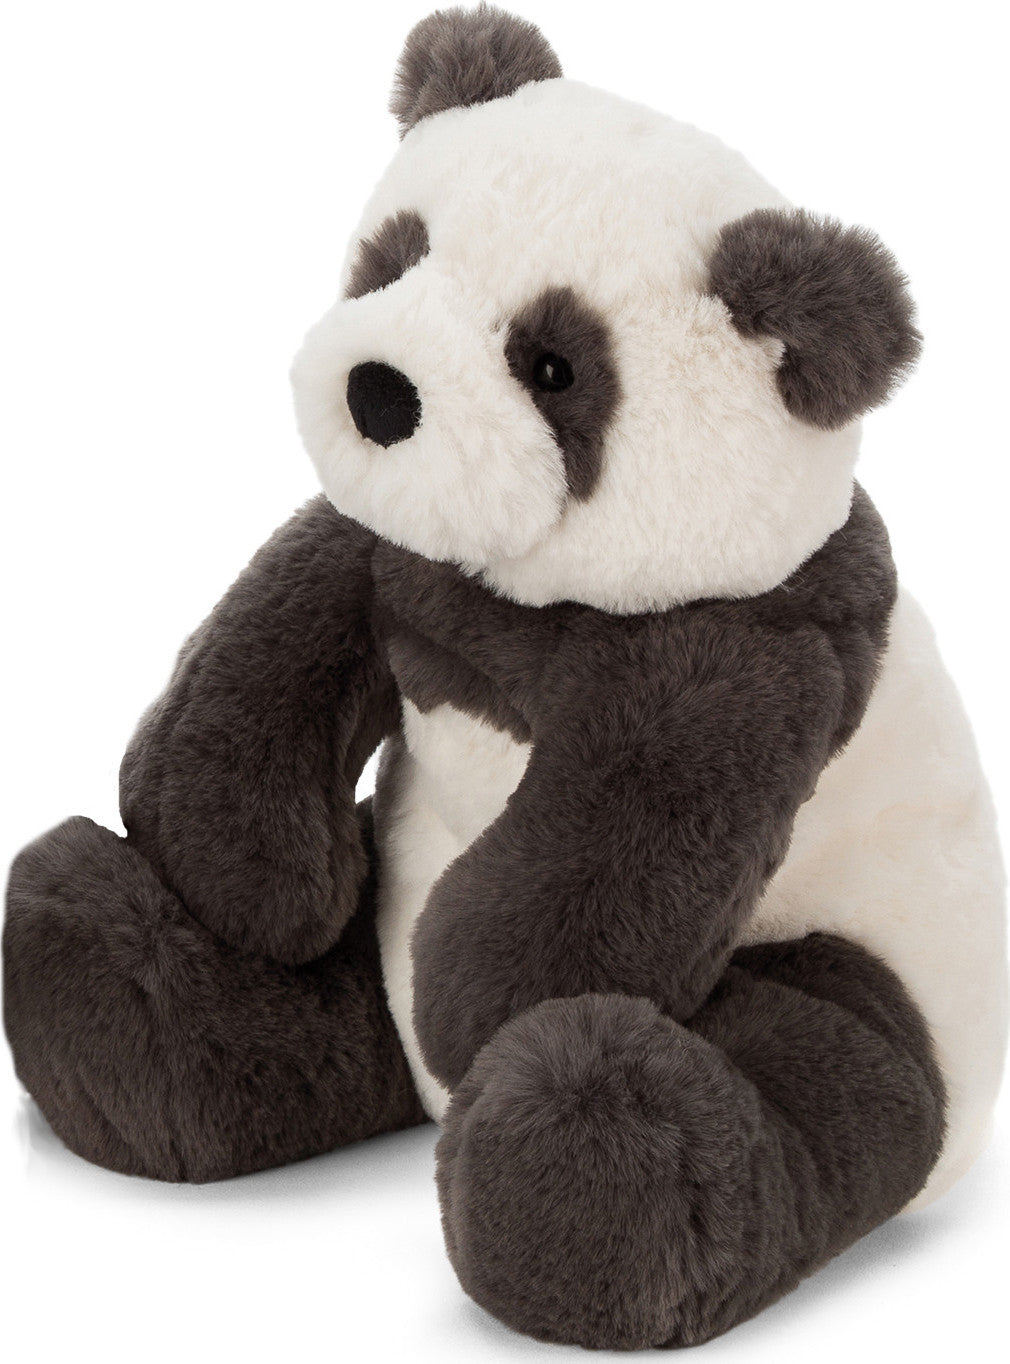 Harry Panda Cub Medium 11"